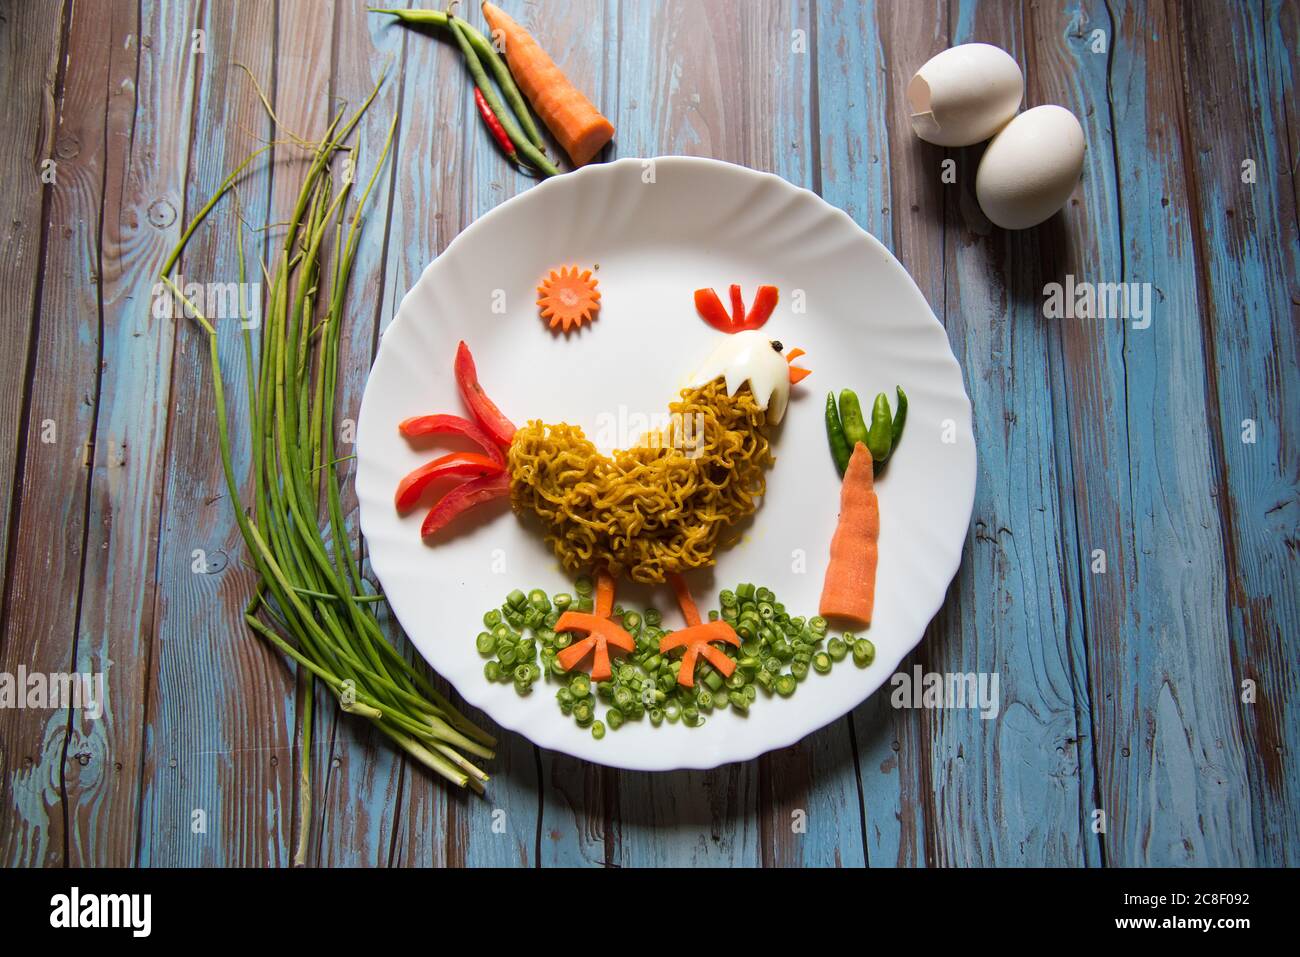 Art alimentaire sur fond de nouilles, de légumes, d'œufs sous forme de coq sur une assiette à concentration sélective. Banque D'Images